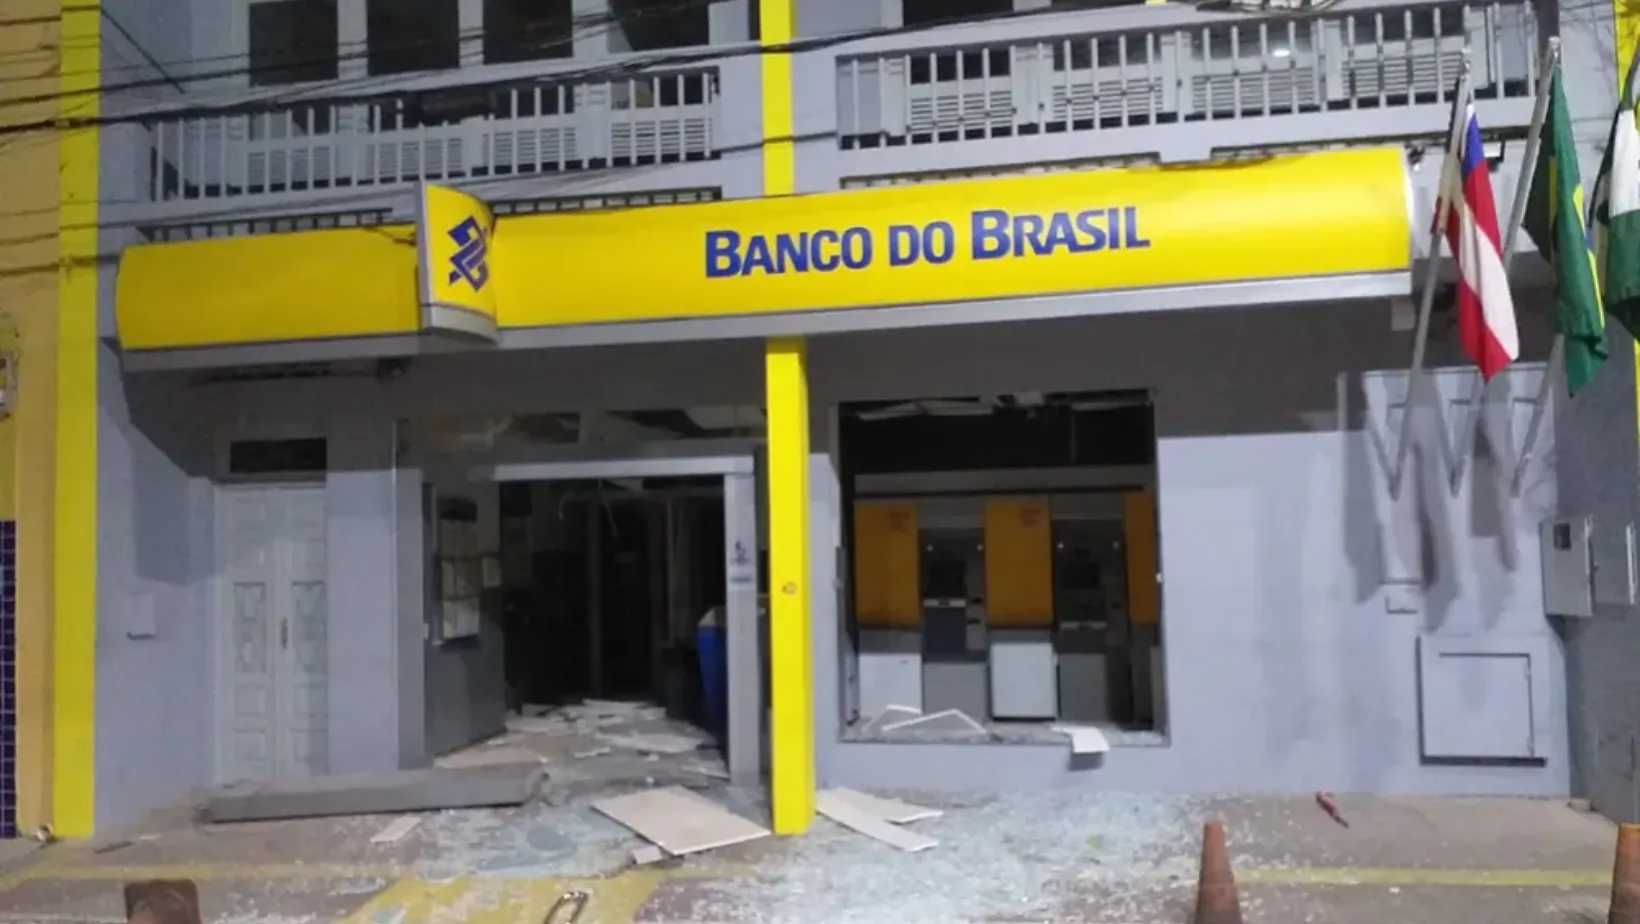 Agências da Caixa Econômica Federal, Bradesco e Banco do Brasil foram atacadas pelo grupo criminoso.